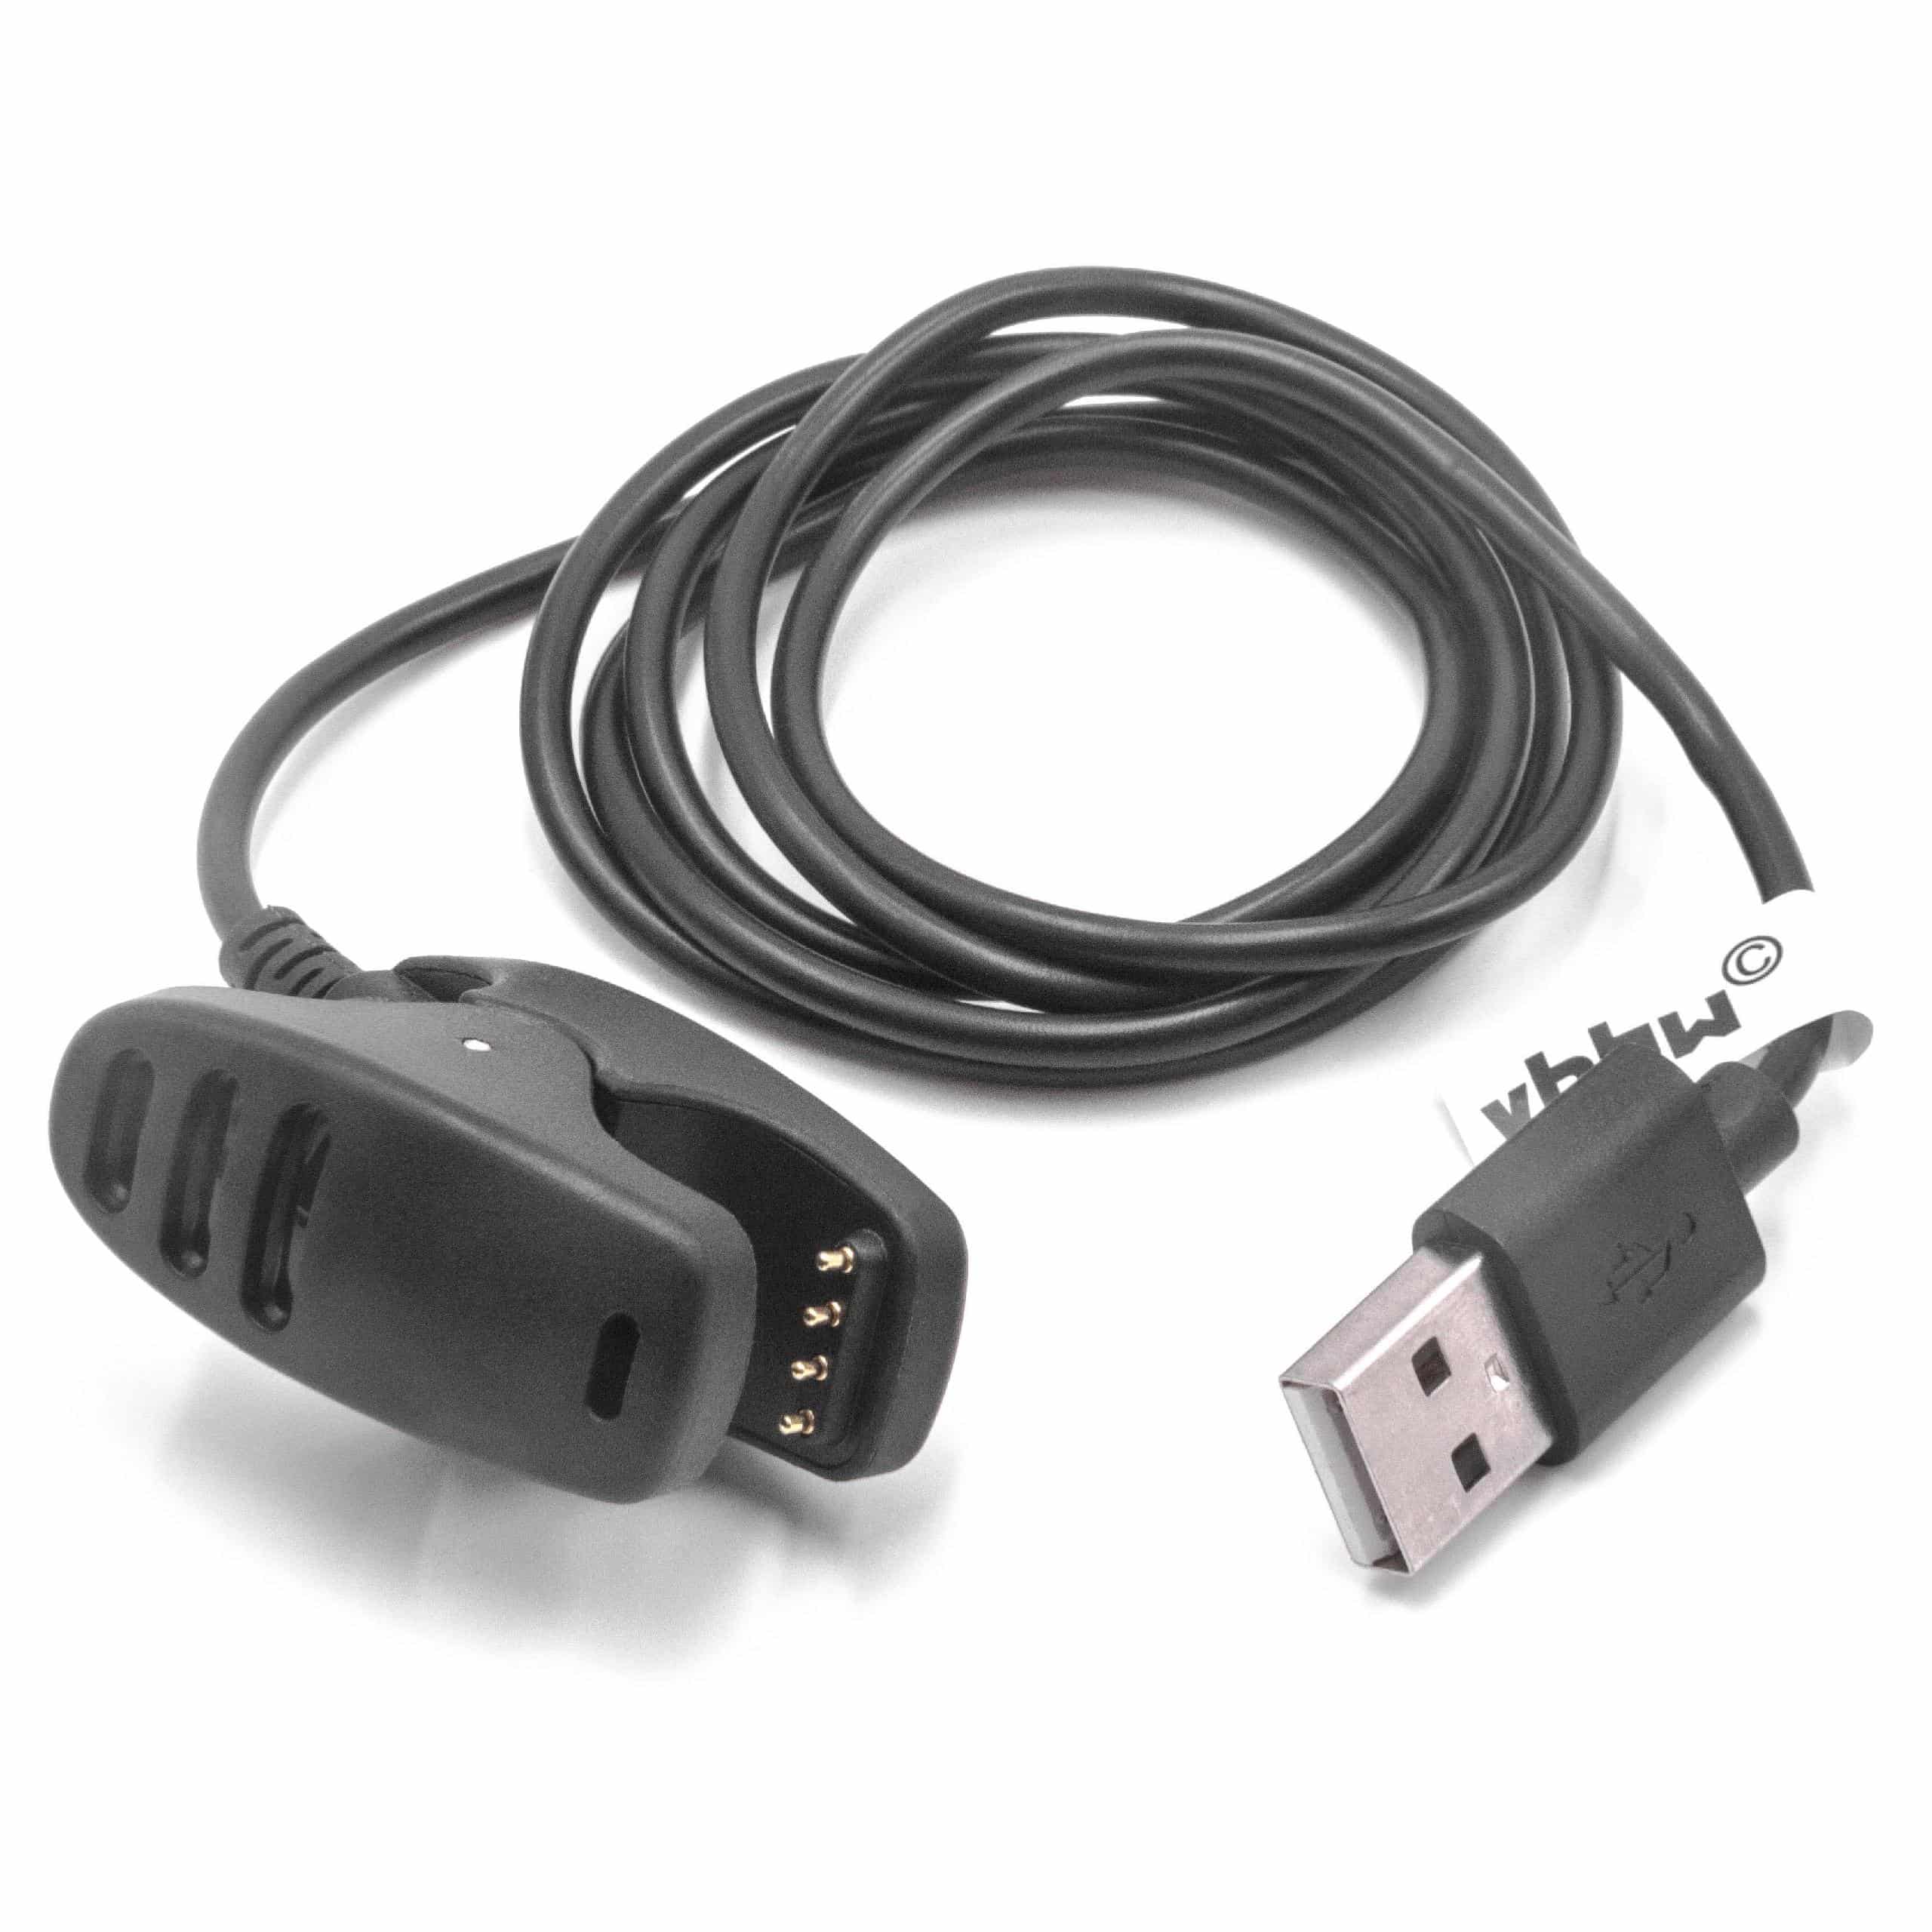 Cable de carga USB para smartwatch Suunto 3 Fitness Watch - negro 100 cm